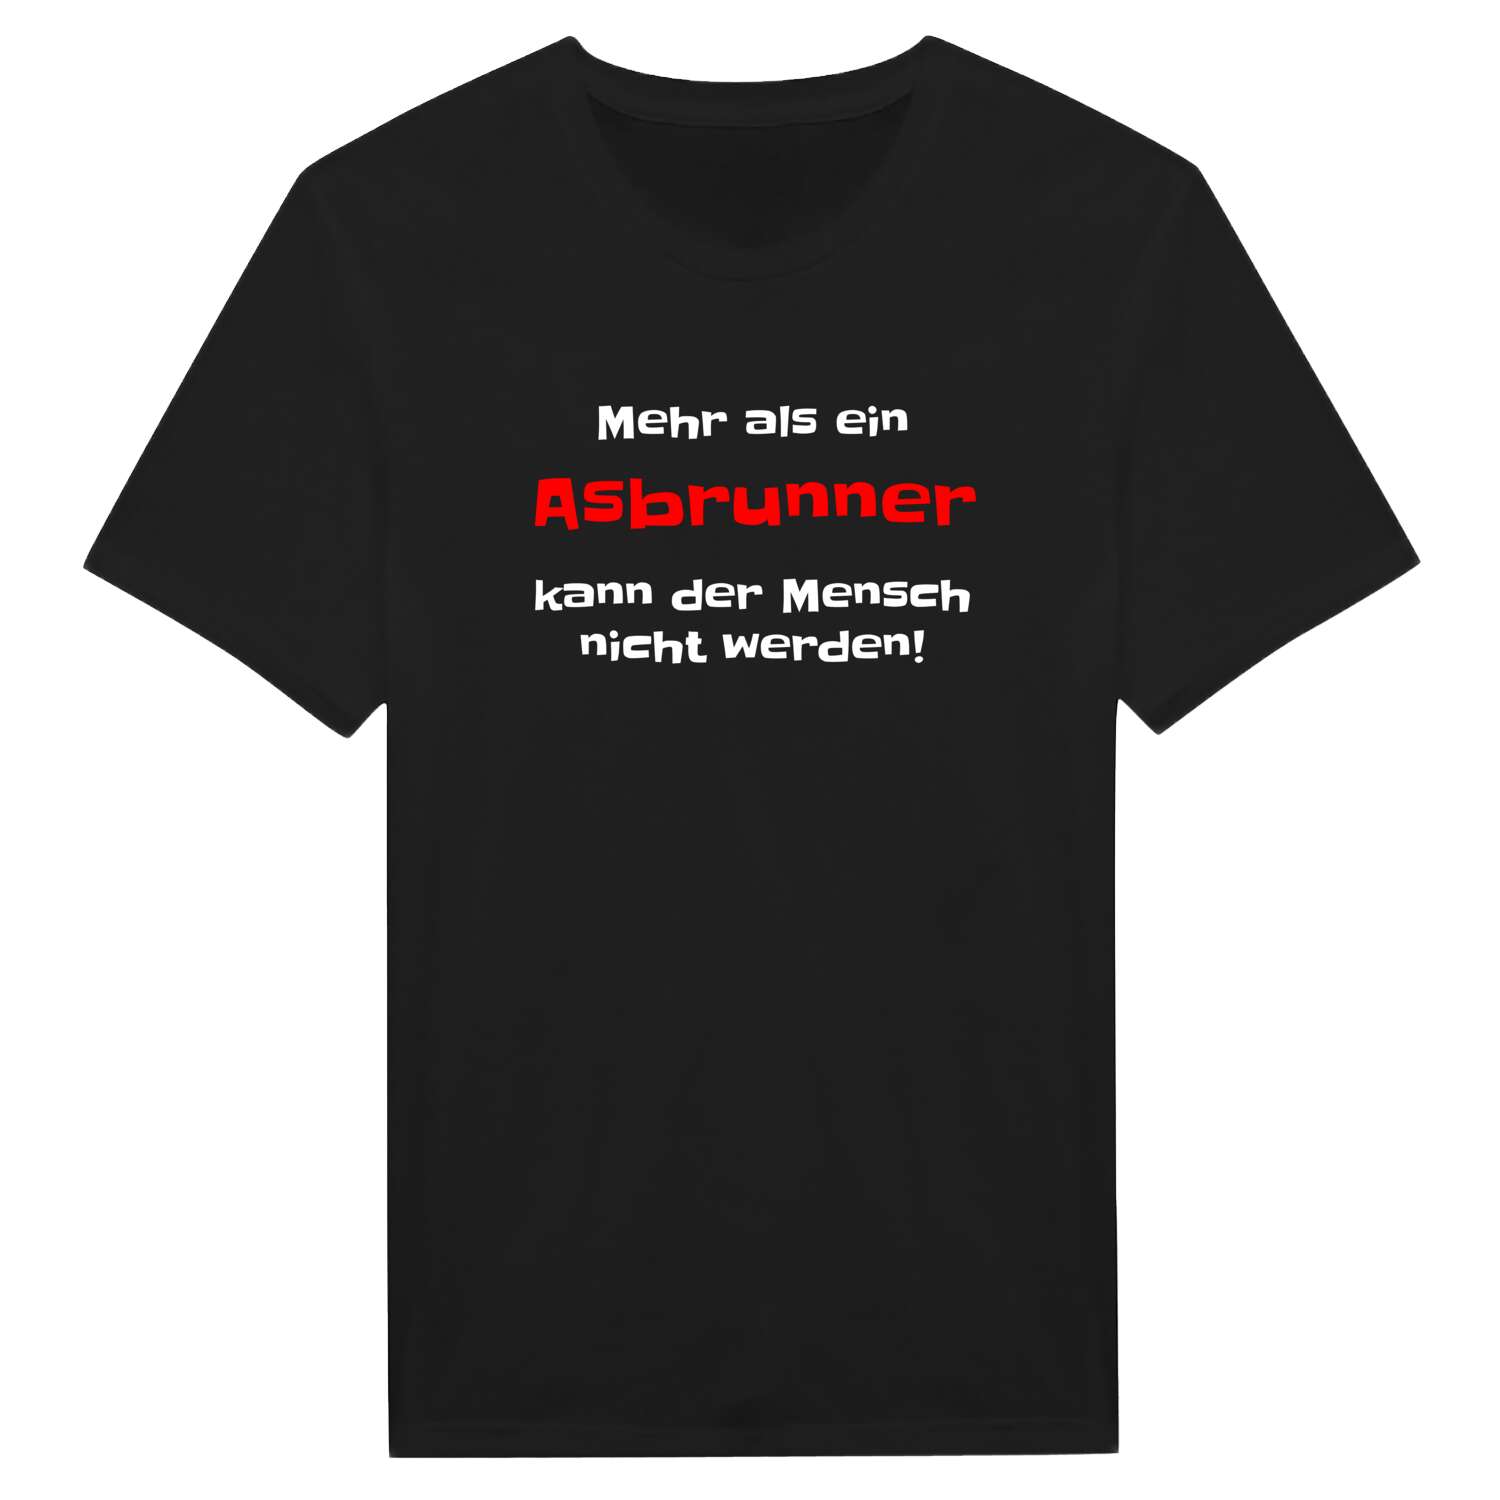 Asbrunn T-Shirt »Mehr als ein«